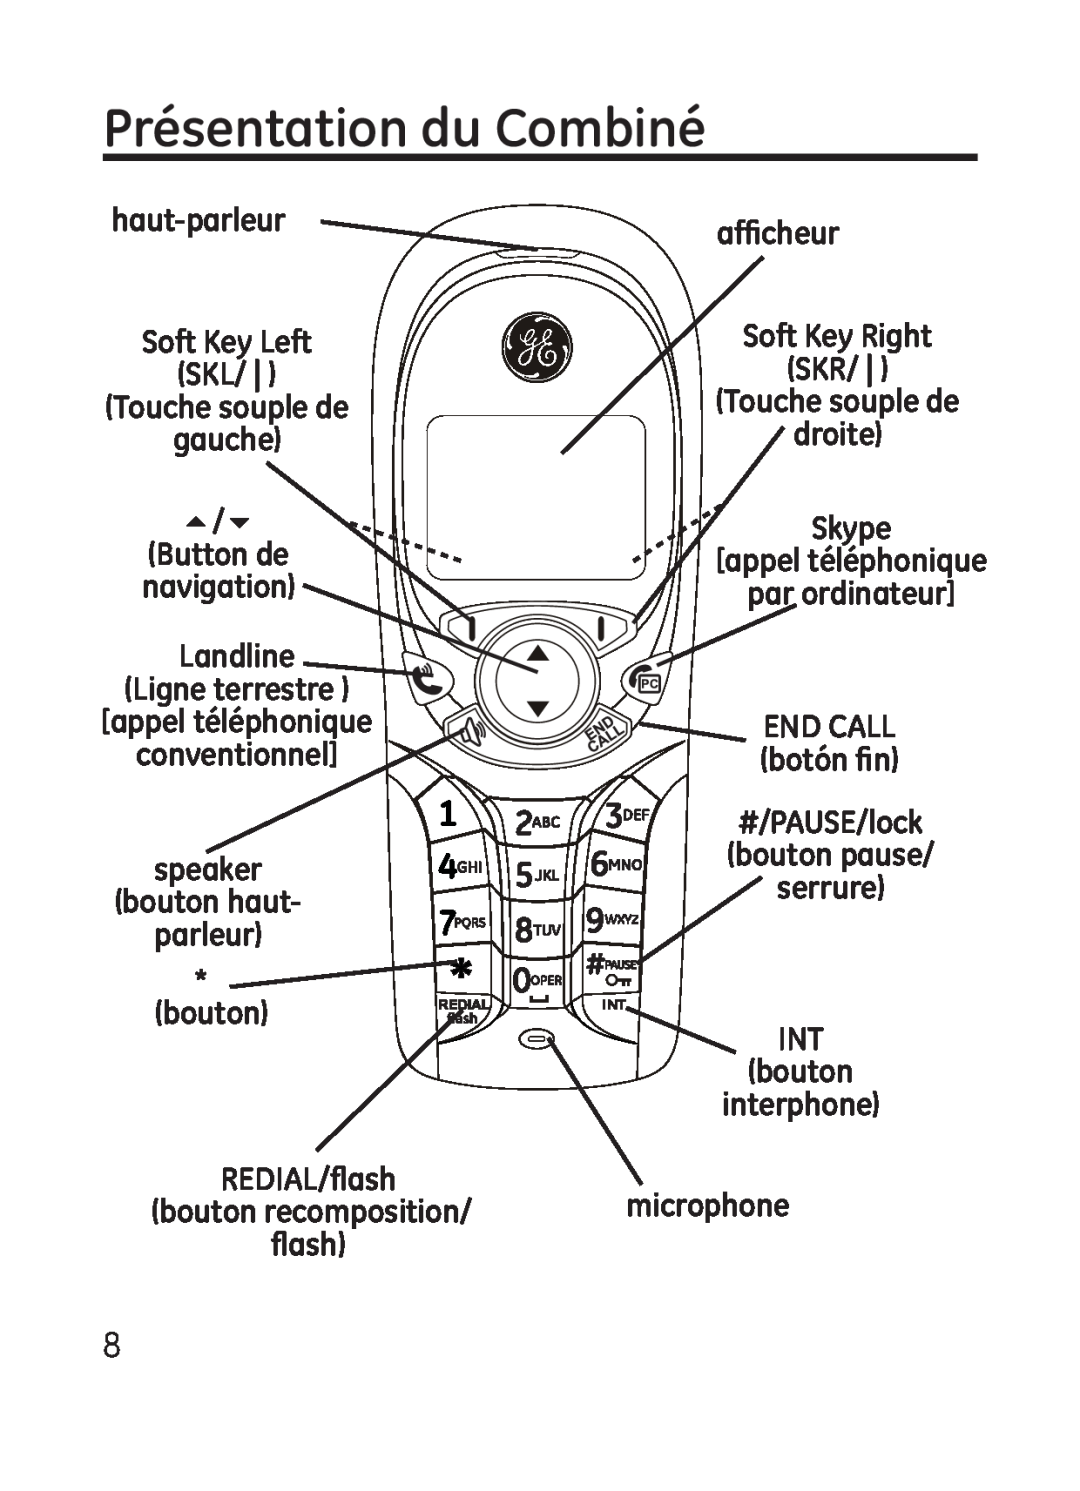 GE 28301 manual Présentation du Combiné, haut-parleur Soft Key Left SKL Touche souple de gauche, bouton, flash 